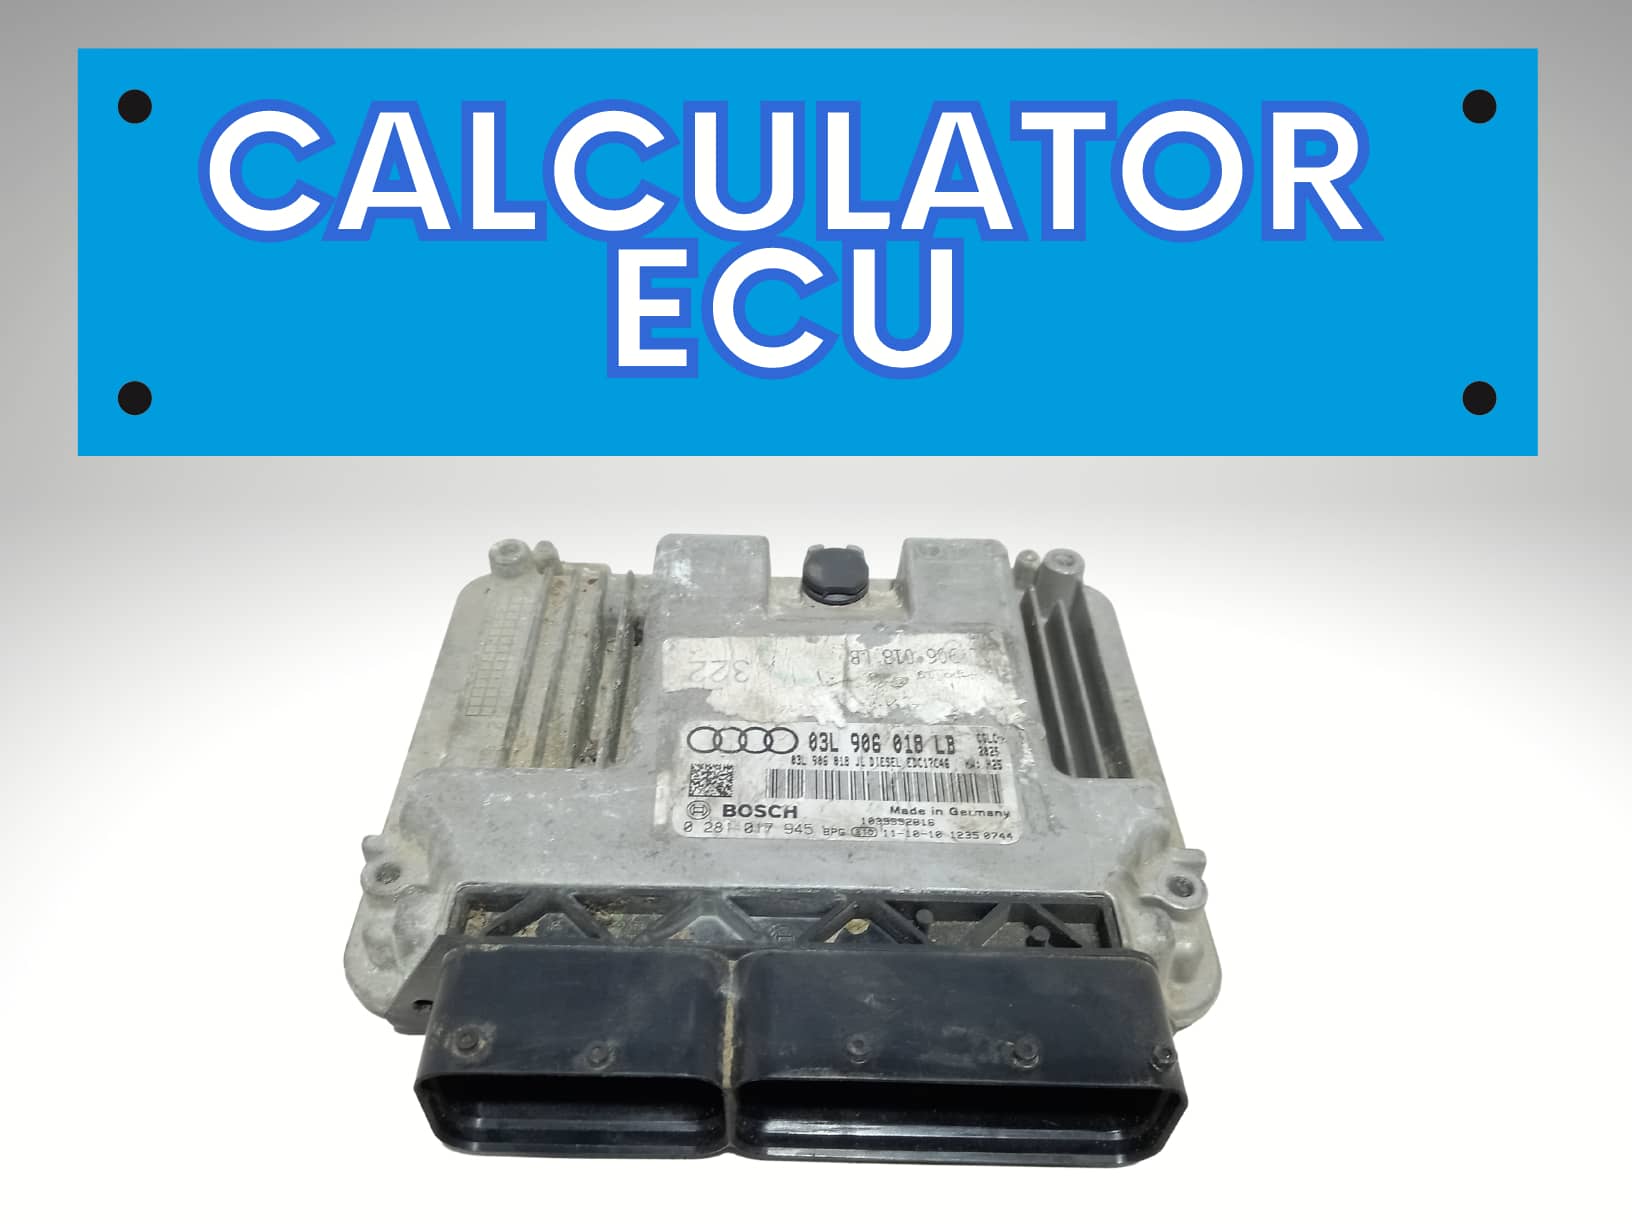 Calculator ECU